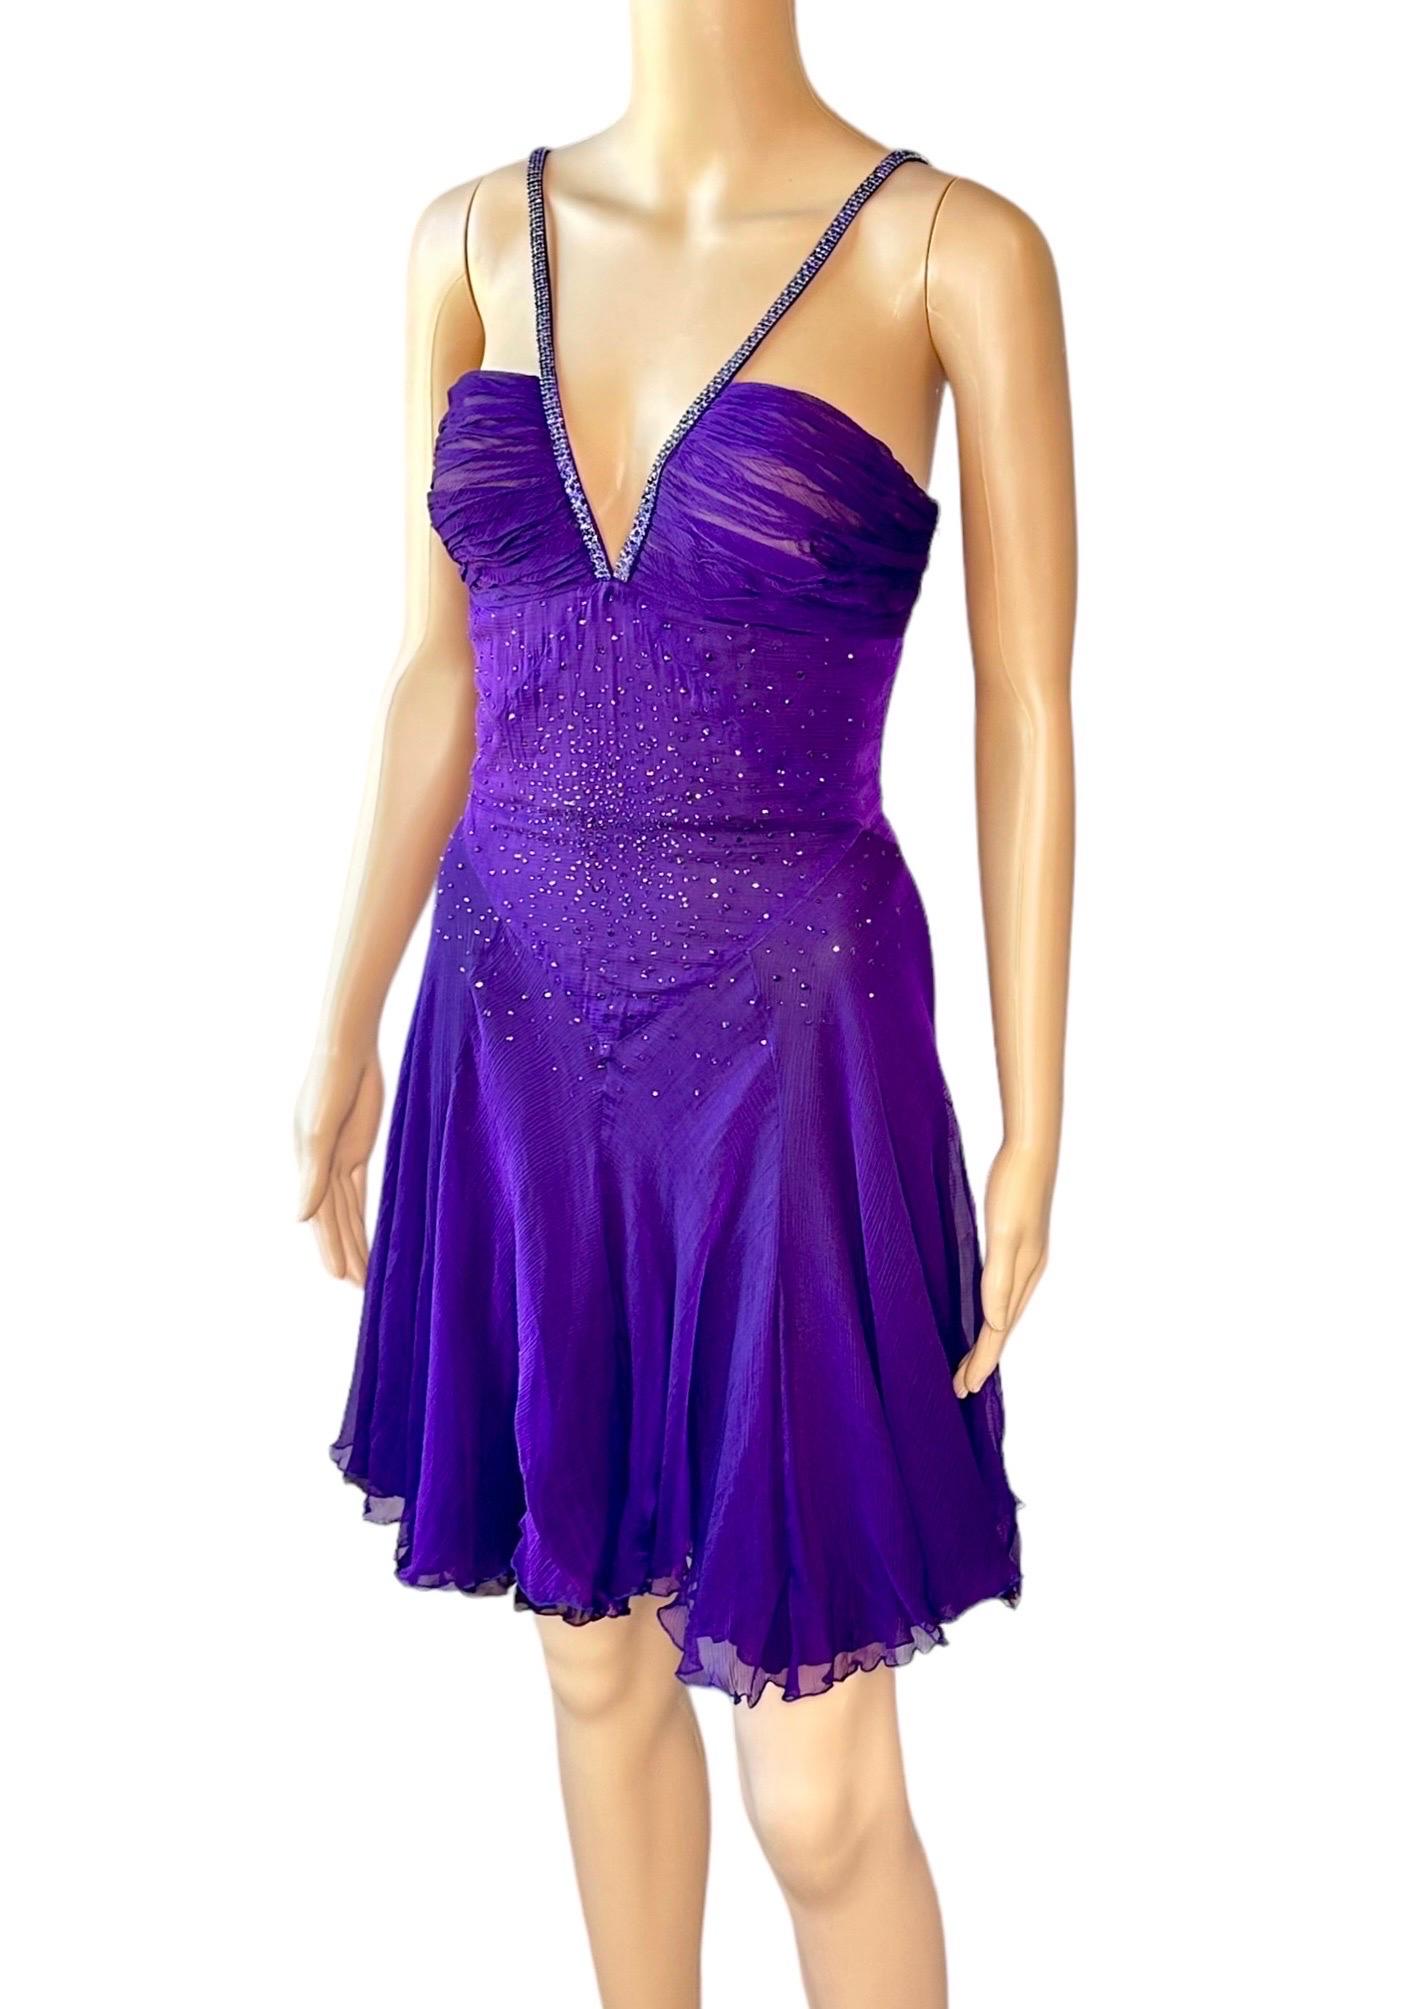 Versace c.2007 Crystal Embellished Plunging Neckline Semi-Sheer Purple Dress For Sale 9